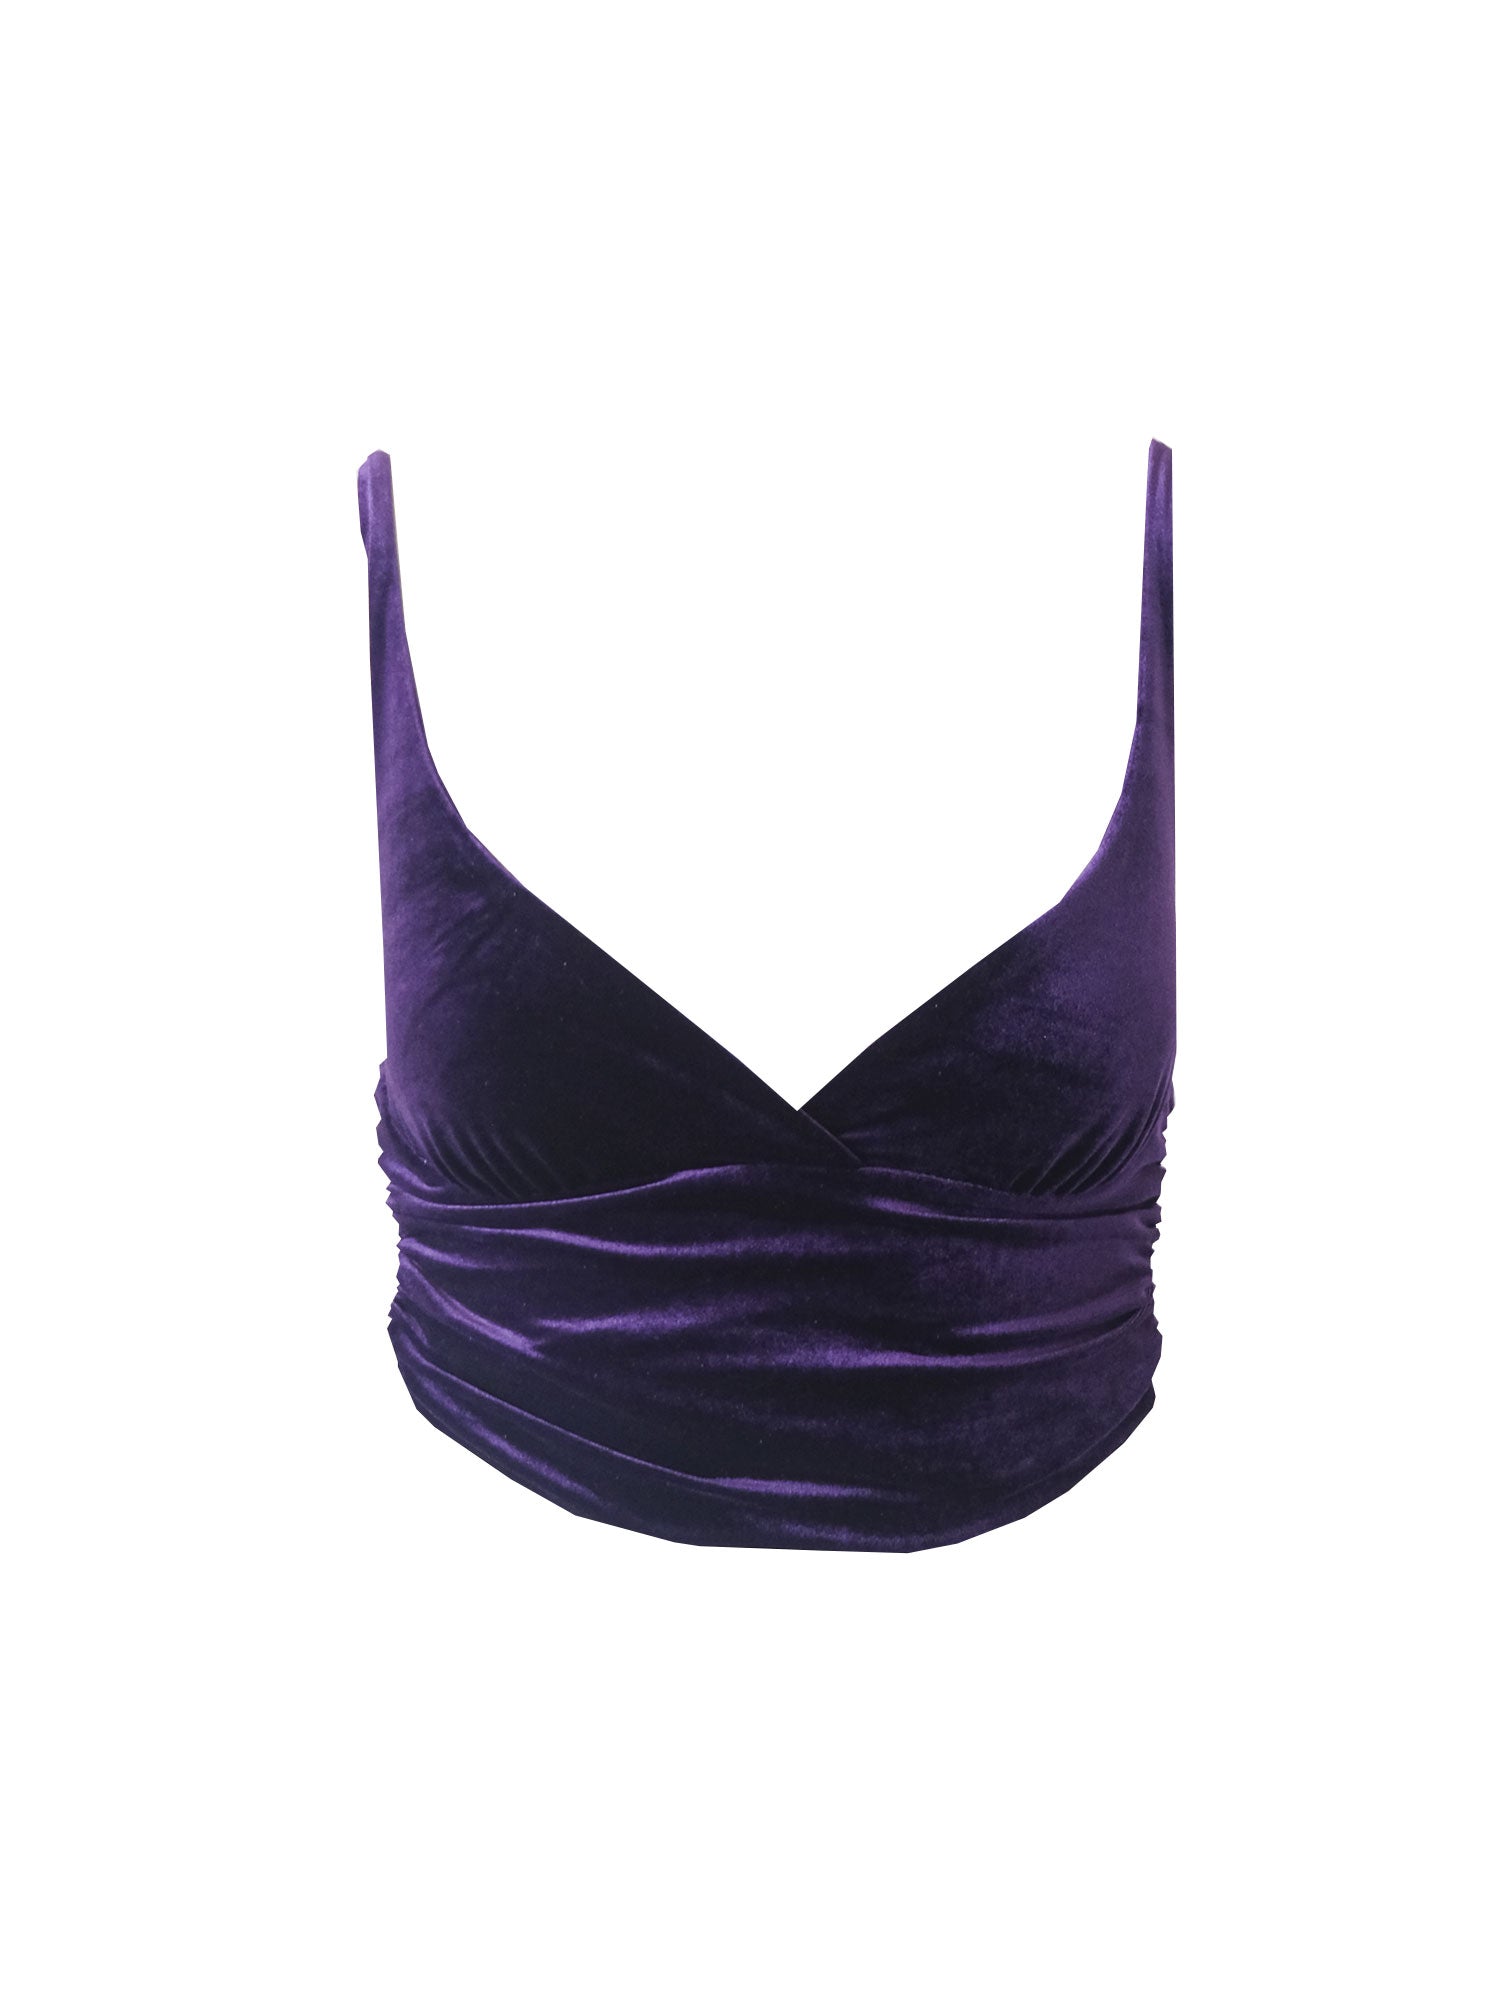 ARIEL - purple velvet top